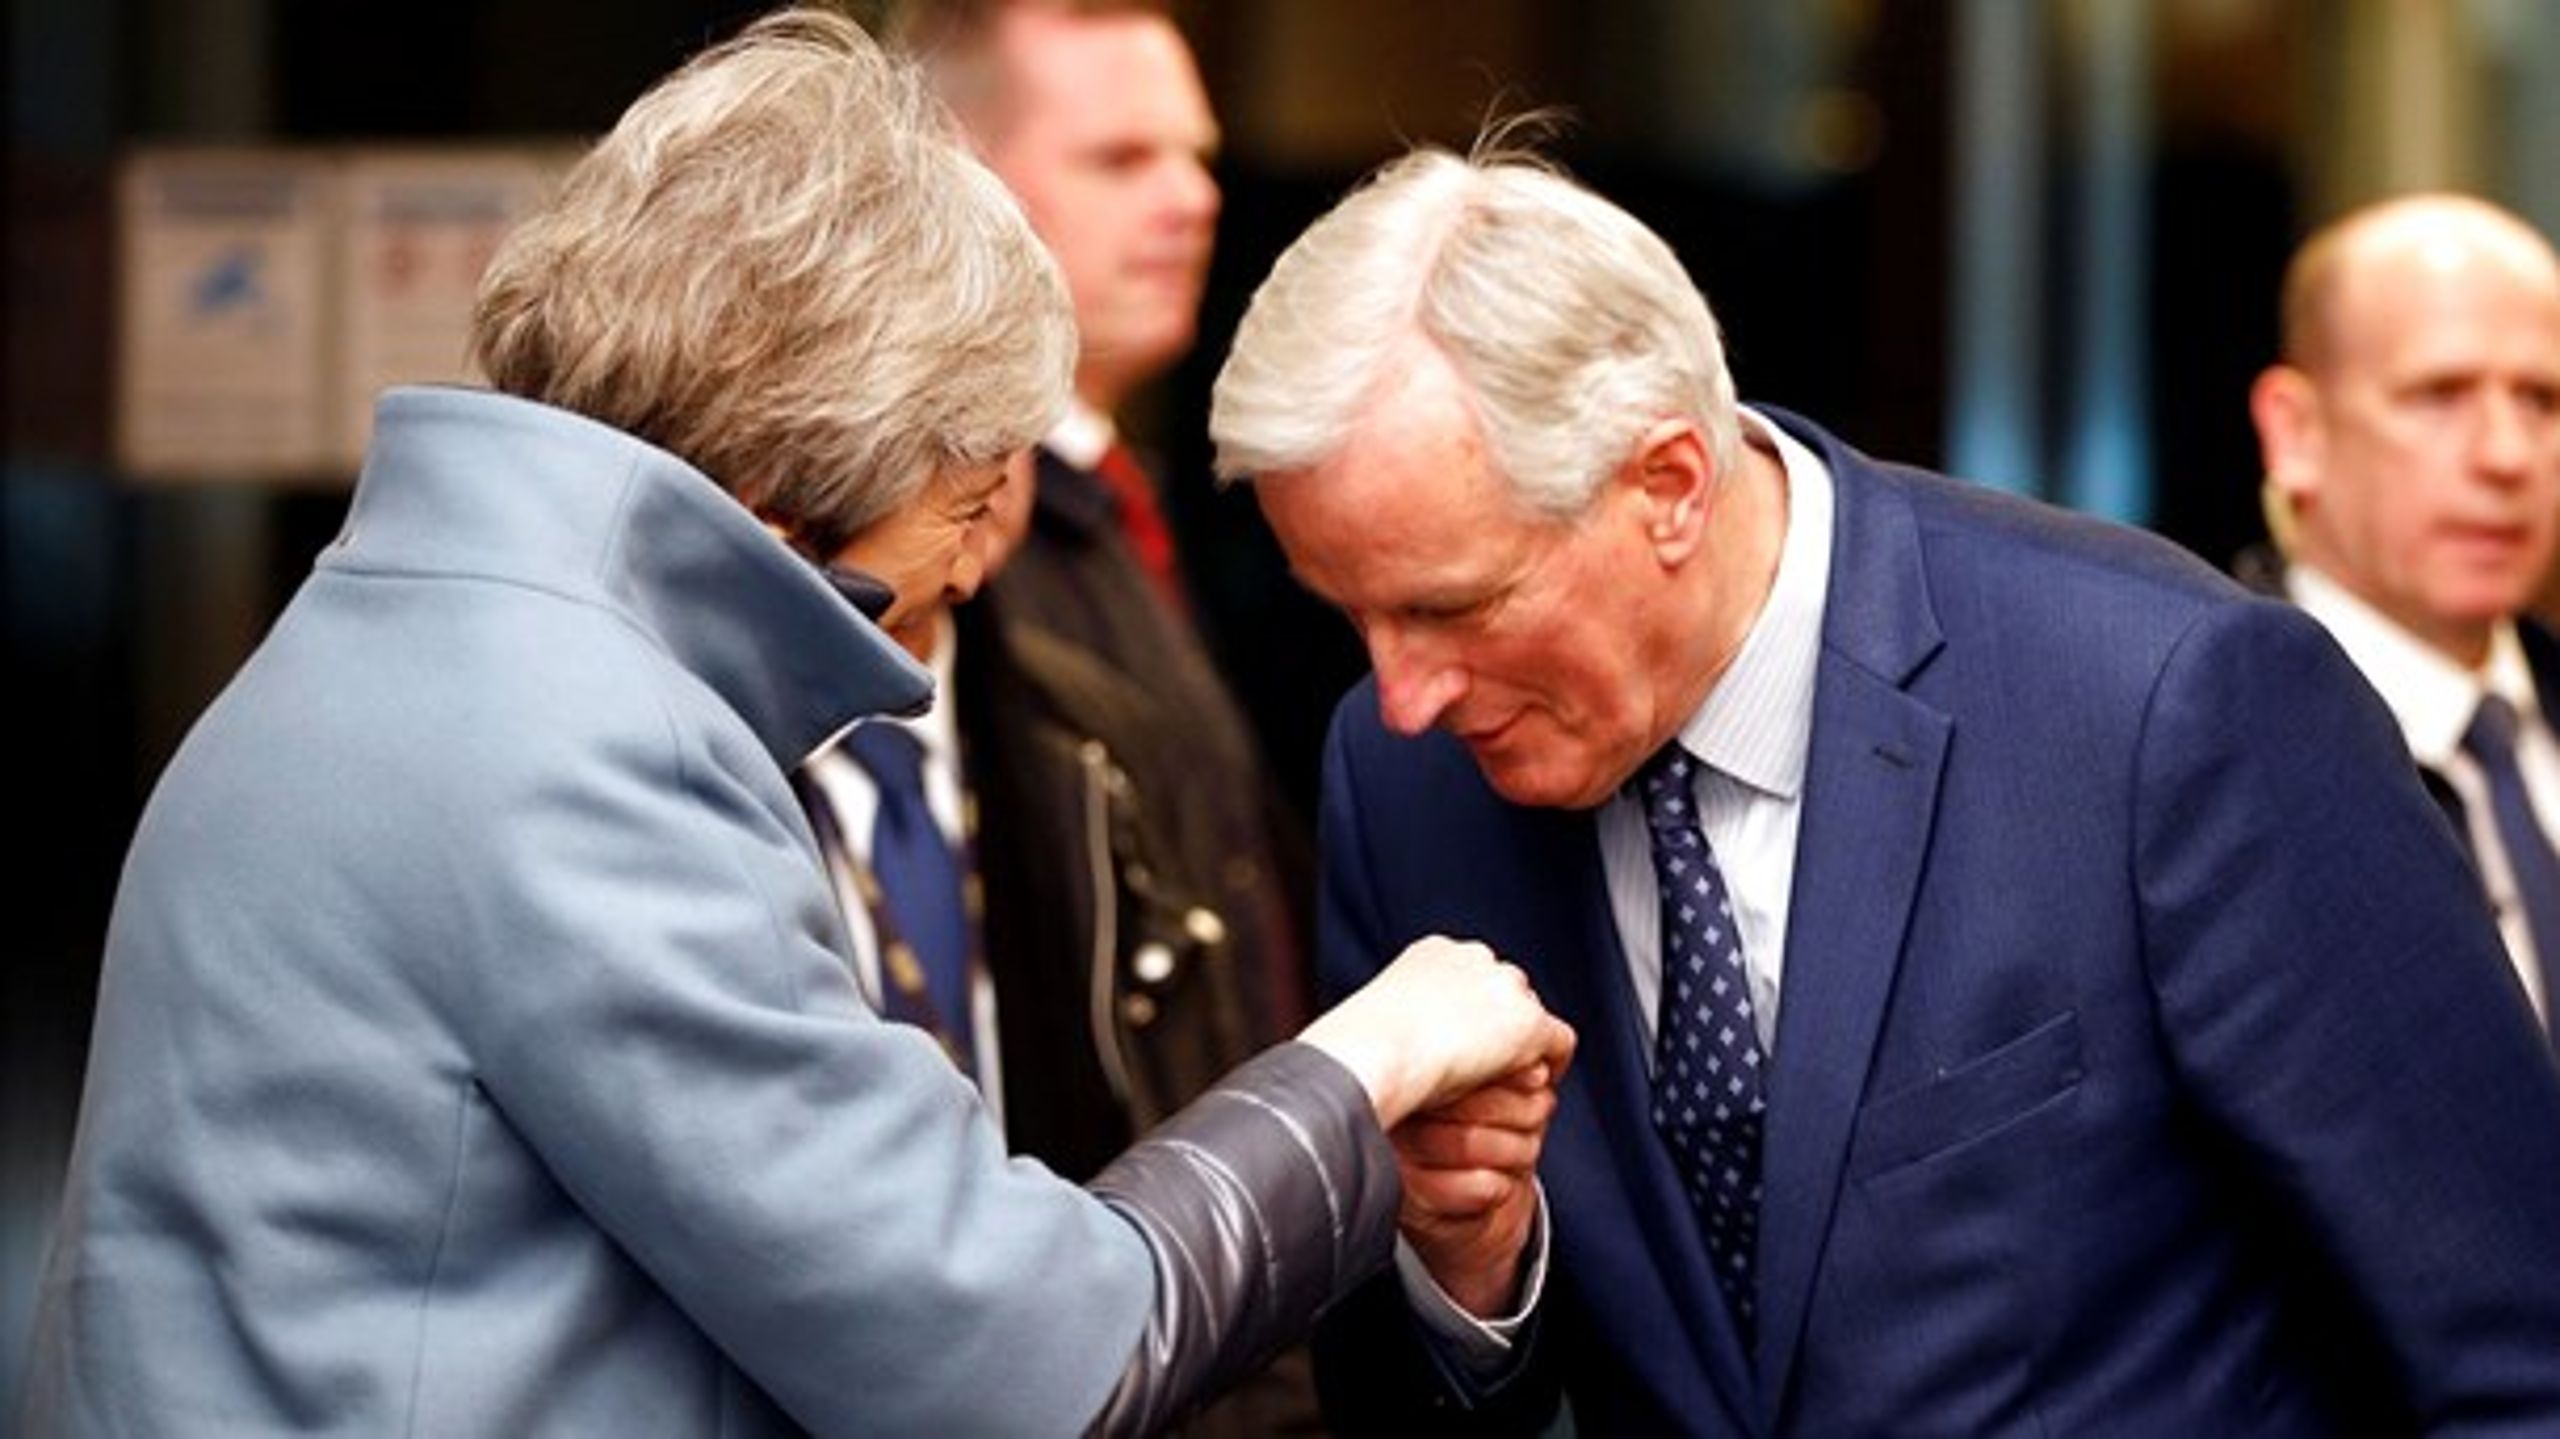 EU:s chefsförhandlare i brexit,&nbsp;Michel Barnier, hälsar Storbritanniens premiärminister,&nbsp;Theresa May, välkommen till Strasbourg.